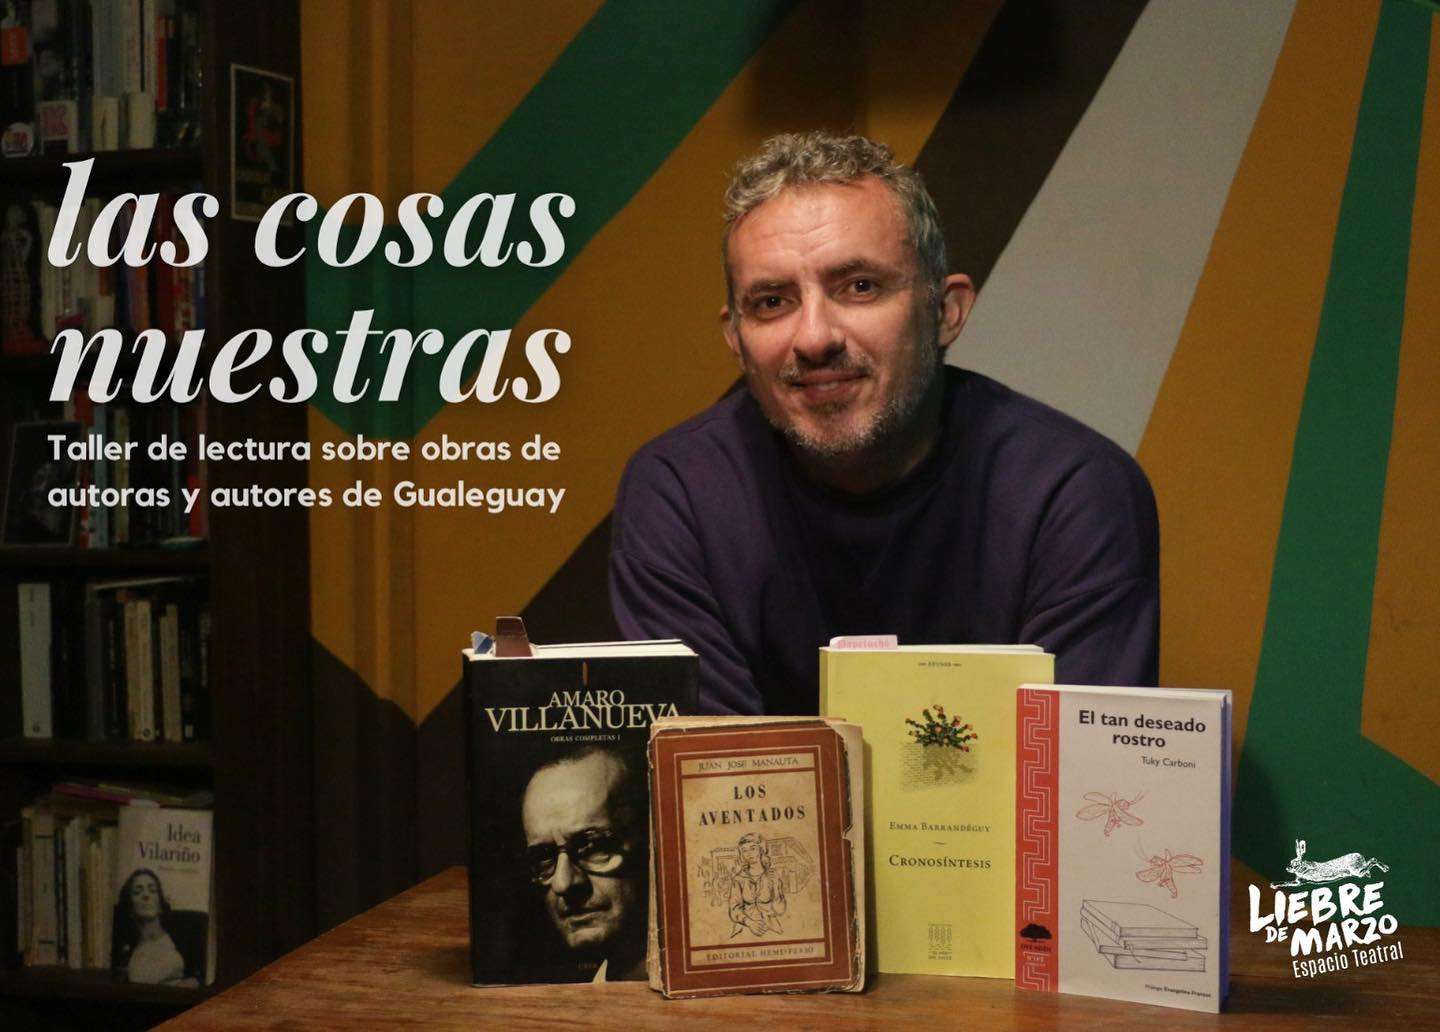 Taller de lectura que posa la mirada sobre obras de autoras y autores de Gualeguay